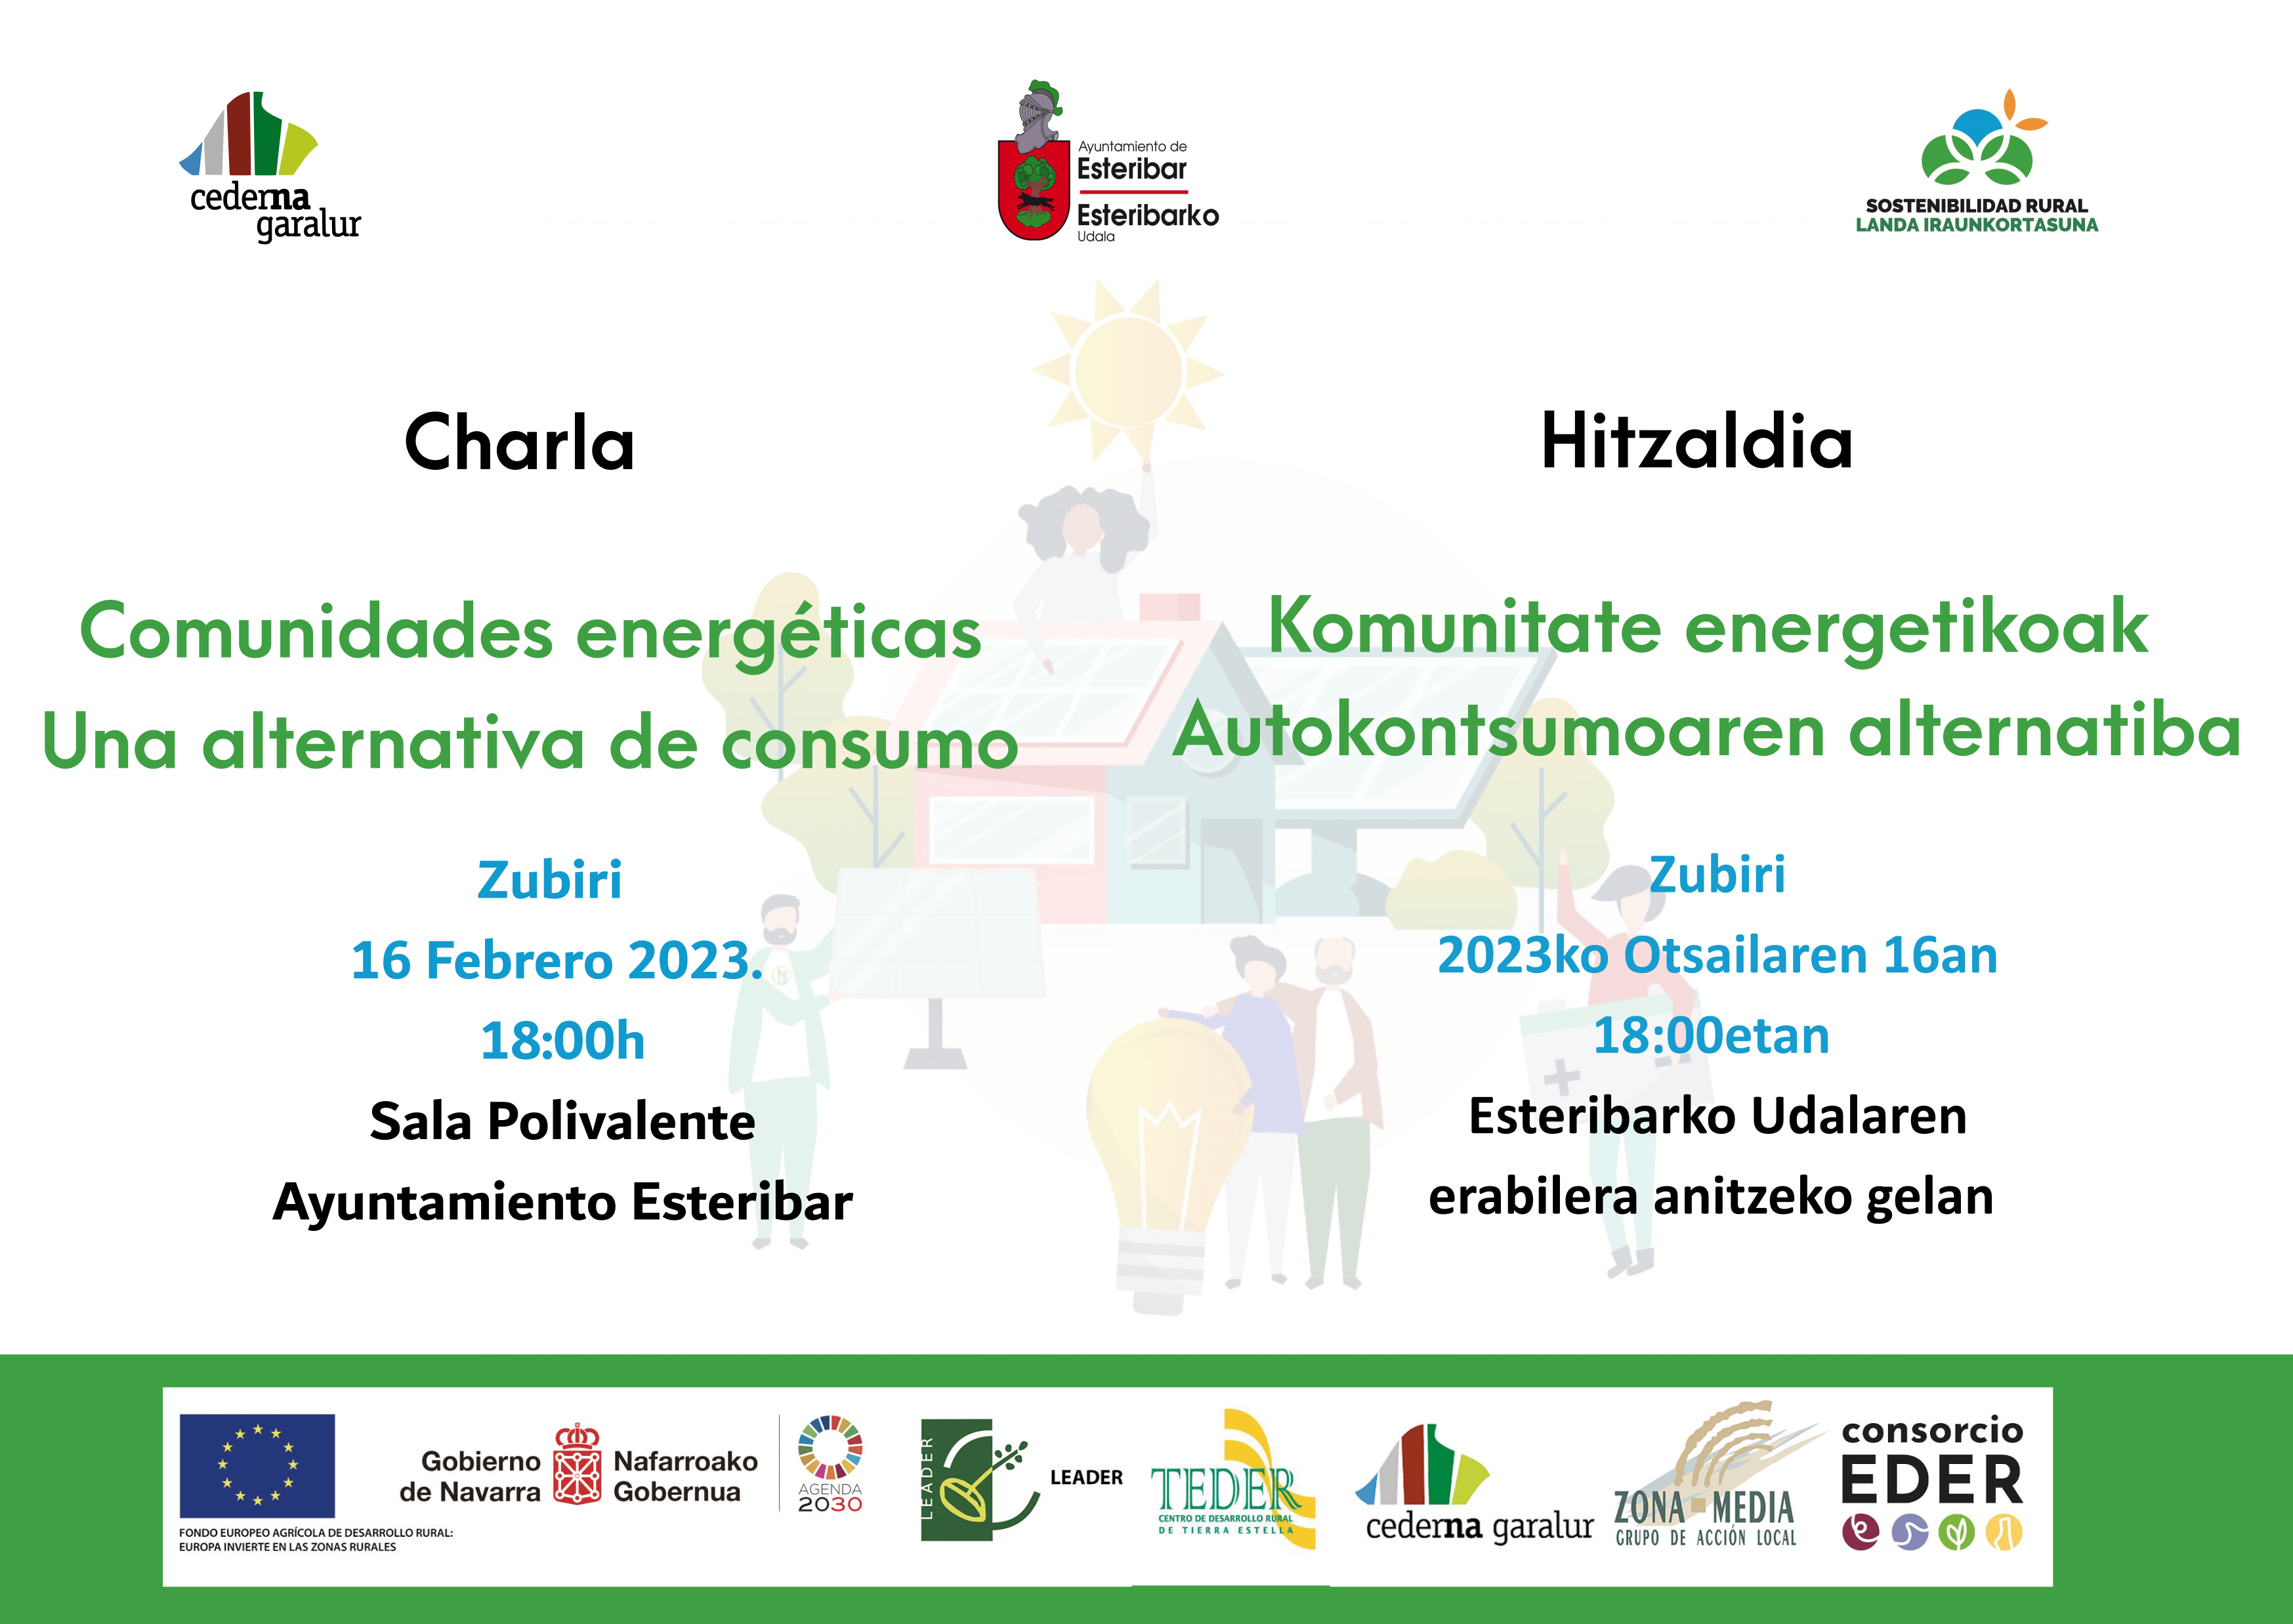 Cederna Garalur organiza una charla informativa sobre comunidades energéticas en Zubiri.